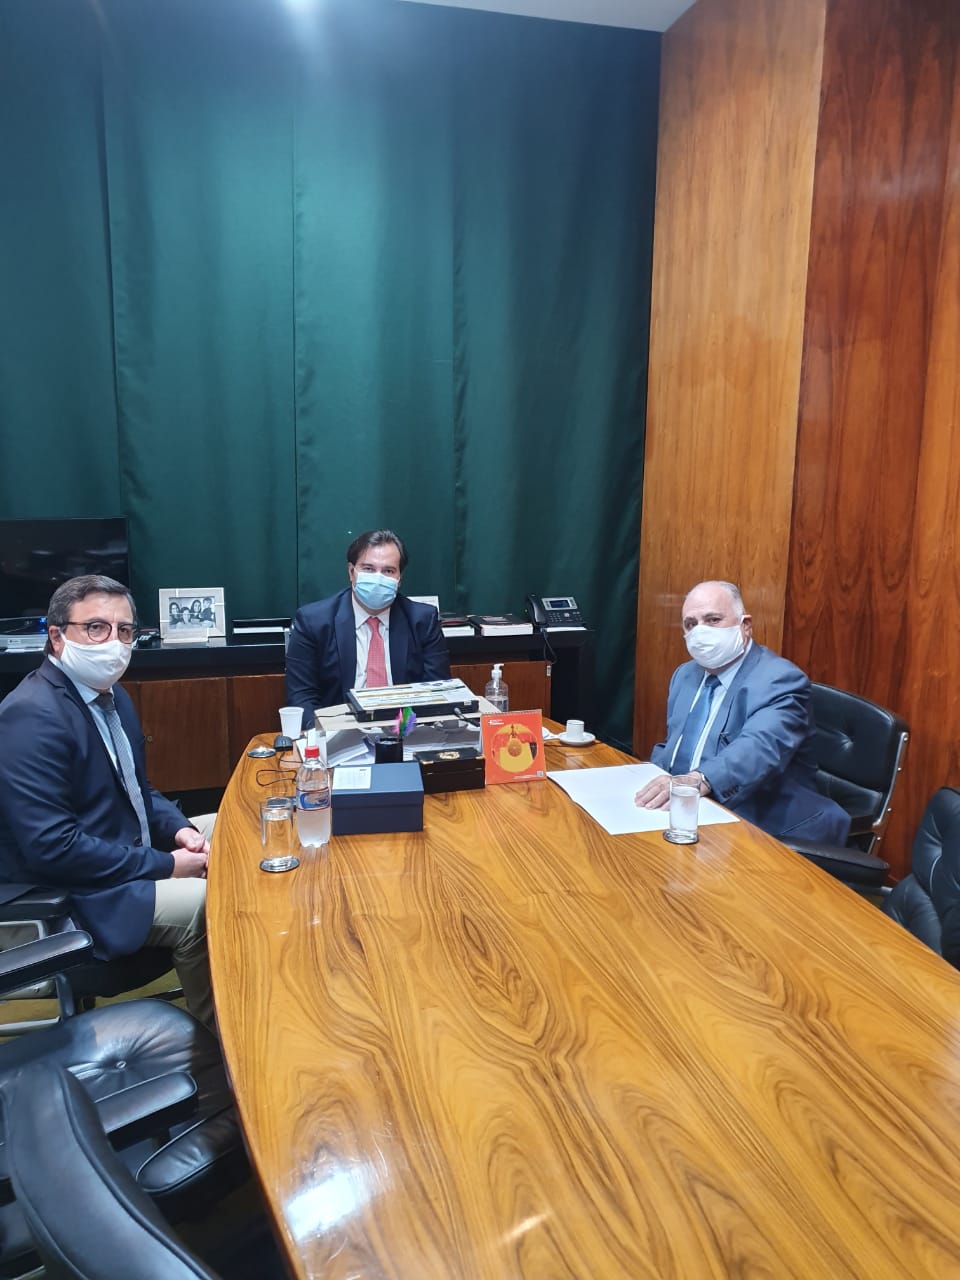  Encontro entre o deputado federal Roberto Pessoa, Danilo Forte e o presidente da Câmara, Rodrigo Maia  (Foto: Divulgação )